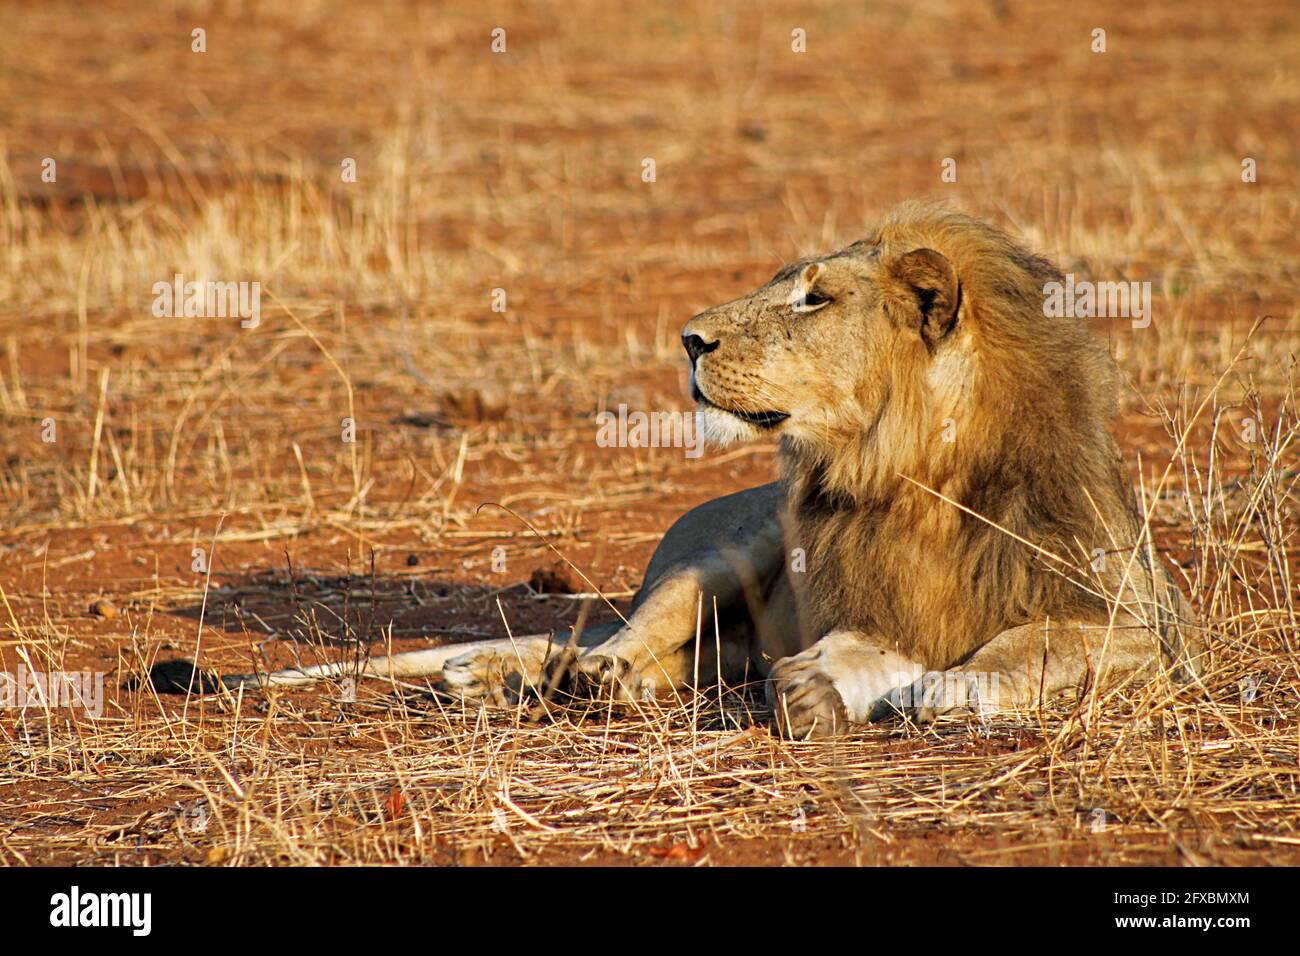 Lion stock photos Stock Photo